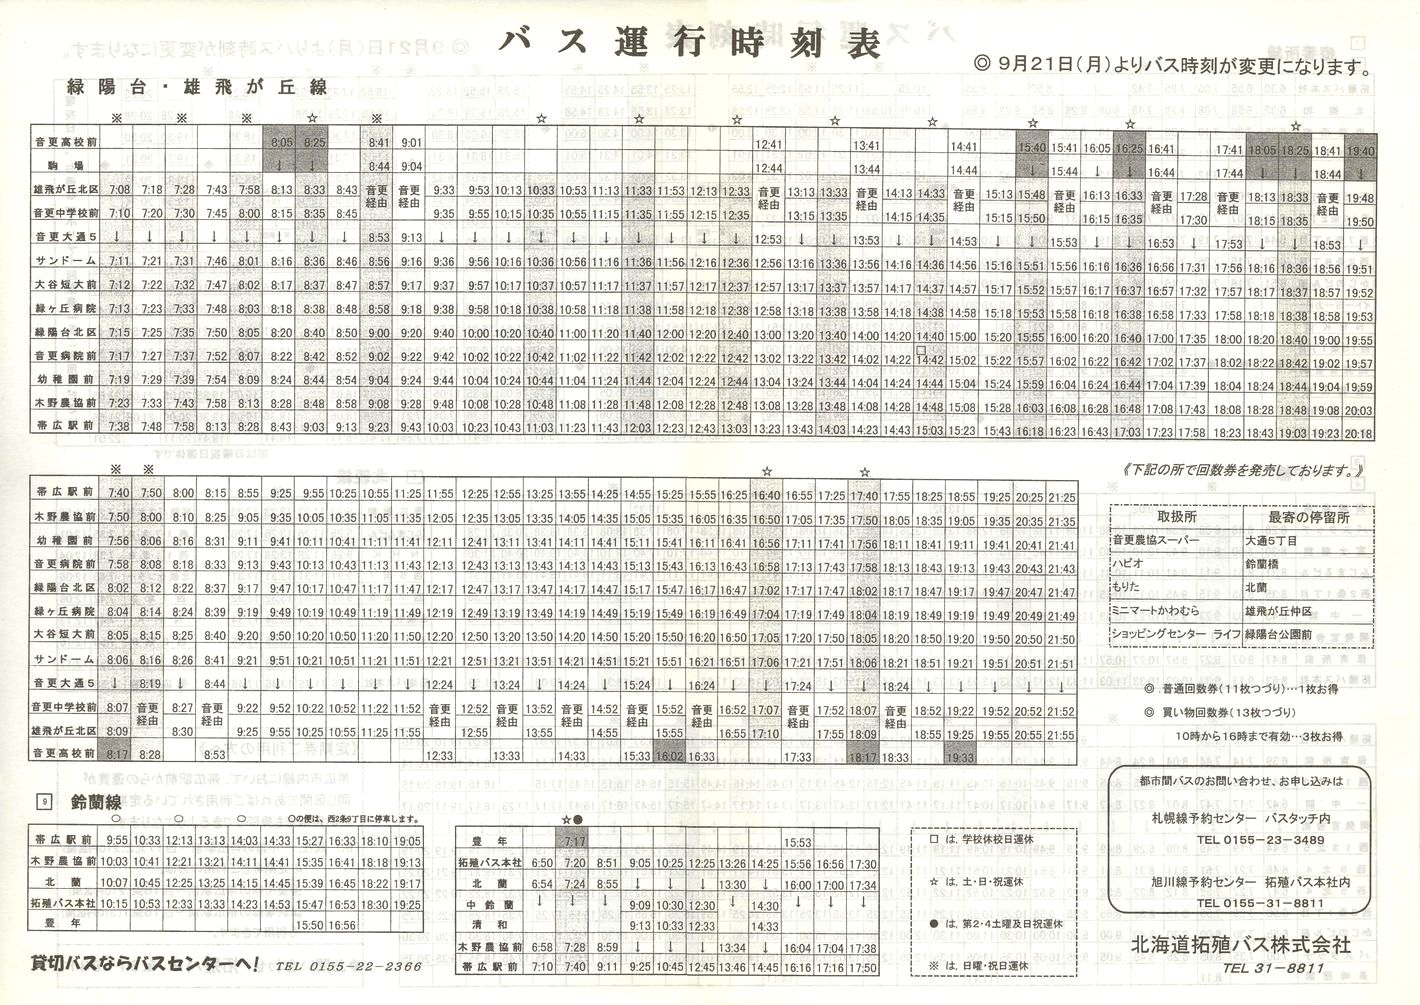 1998-09-21改正_北海道拓殖バス_市内・近郊線時刻表裏面